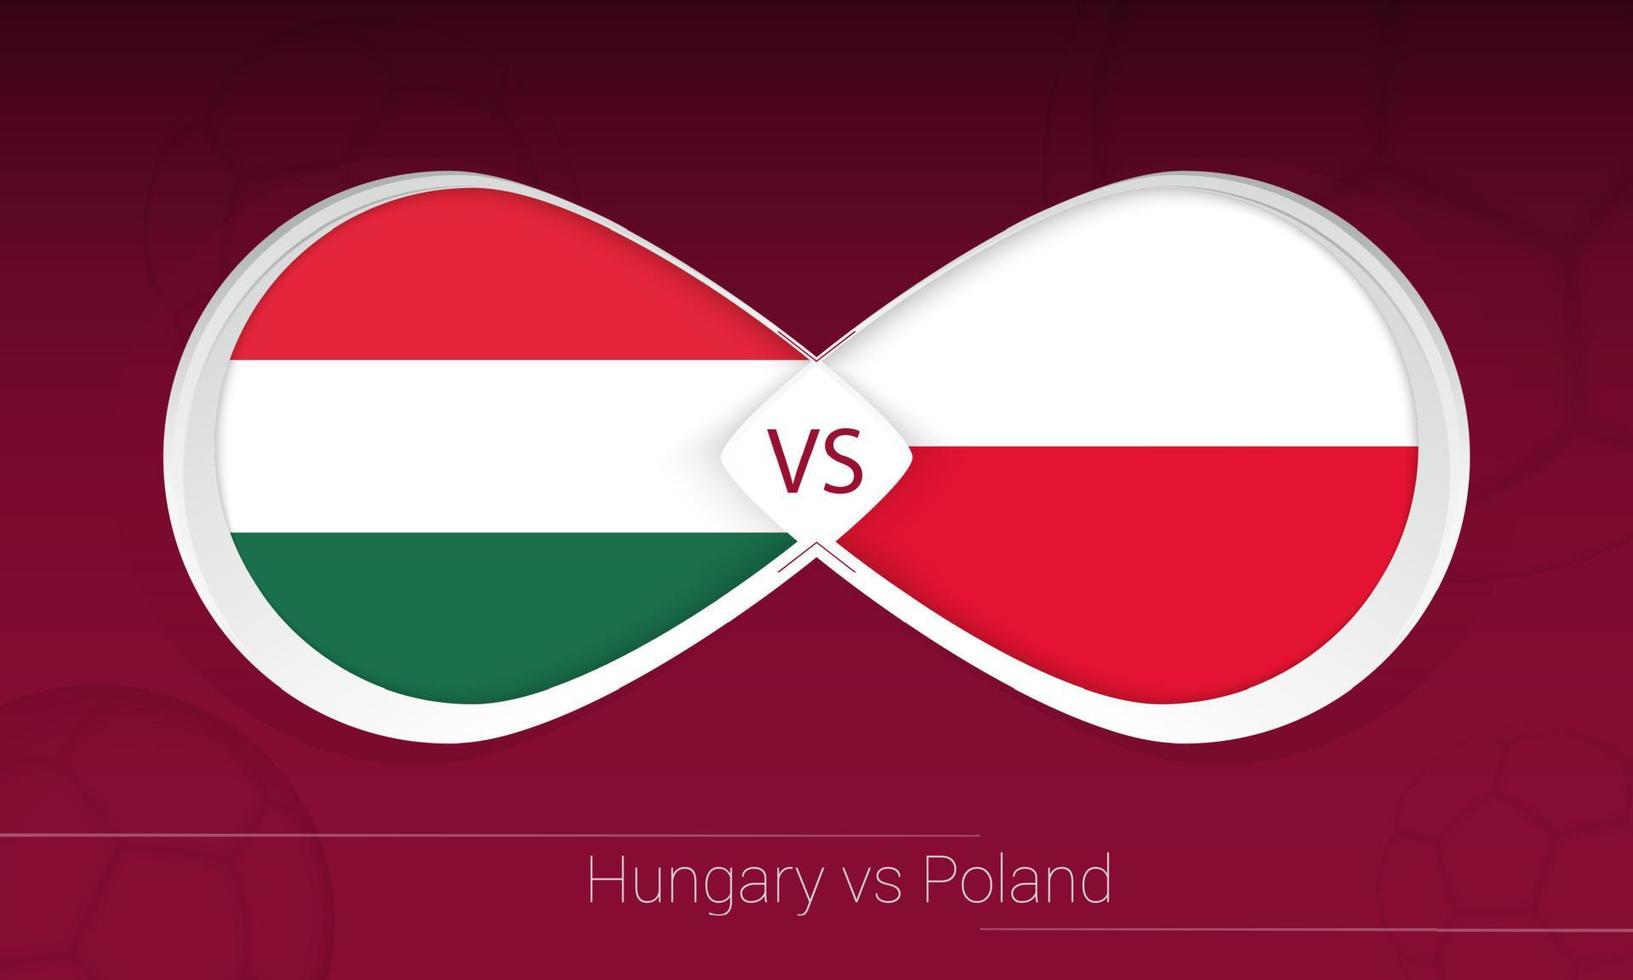 hungría vs polonia en competición de fútbol, grupo i. versus icono en el fondo del fútbol. vector